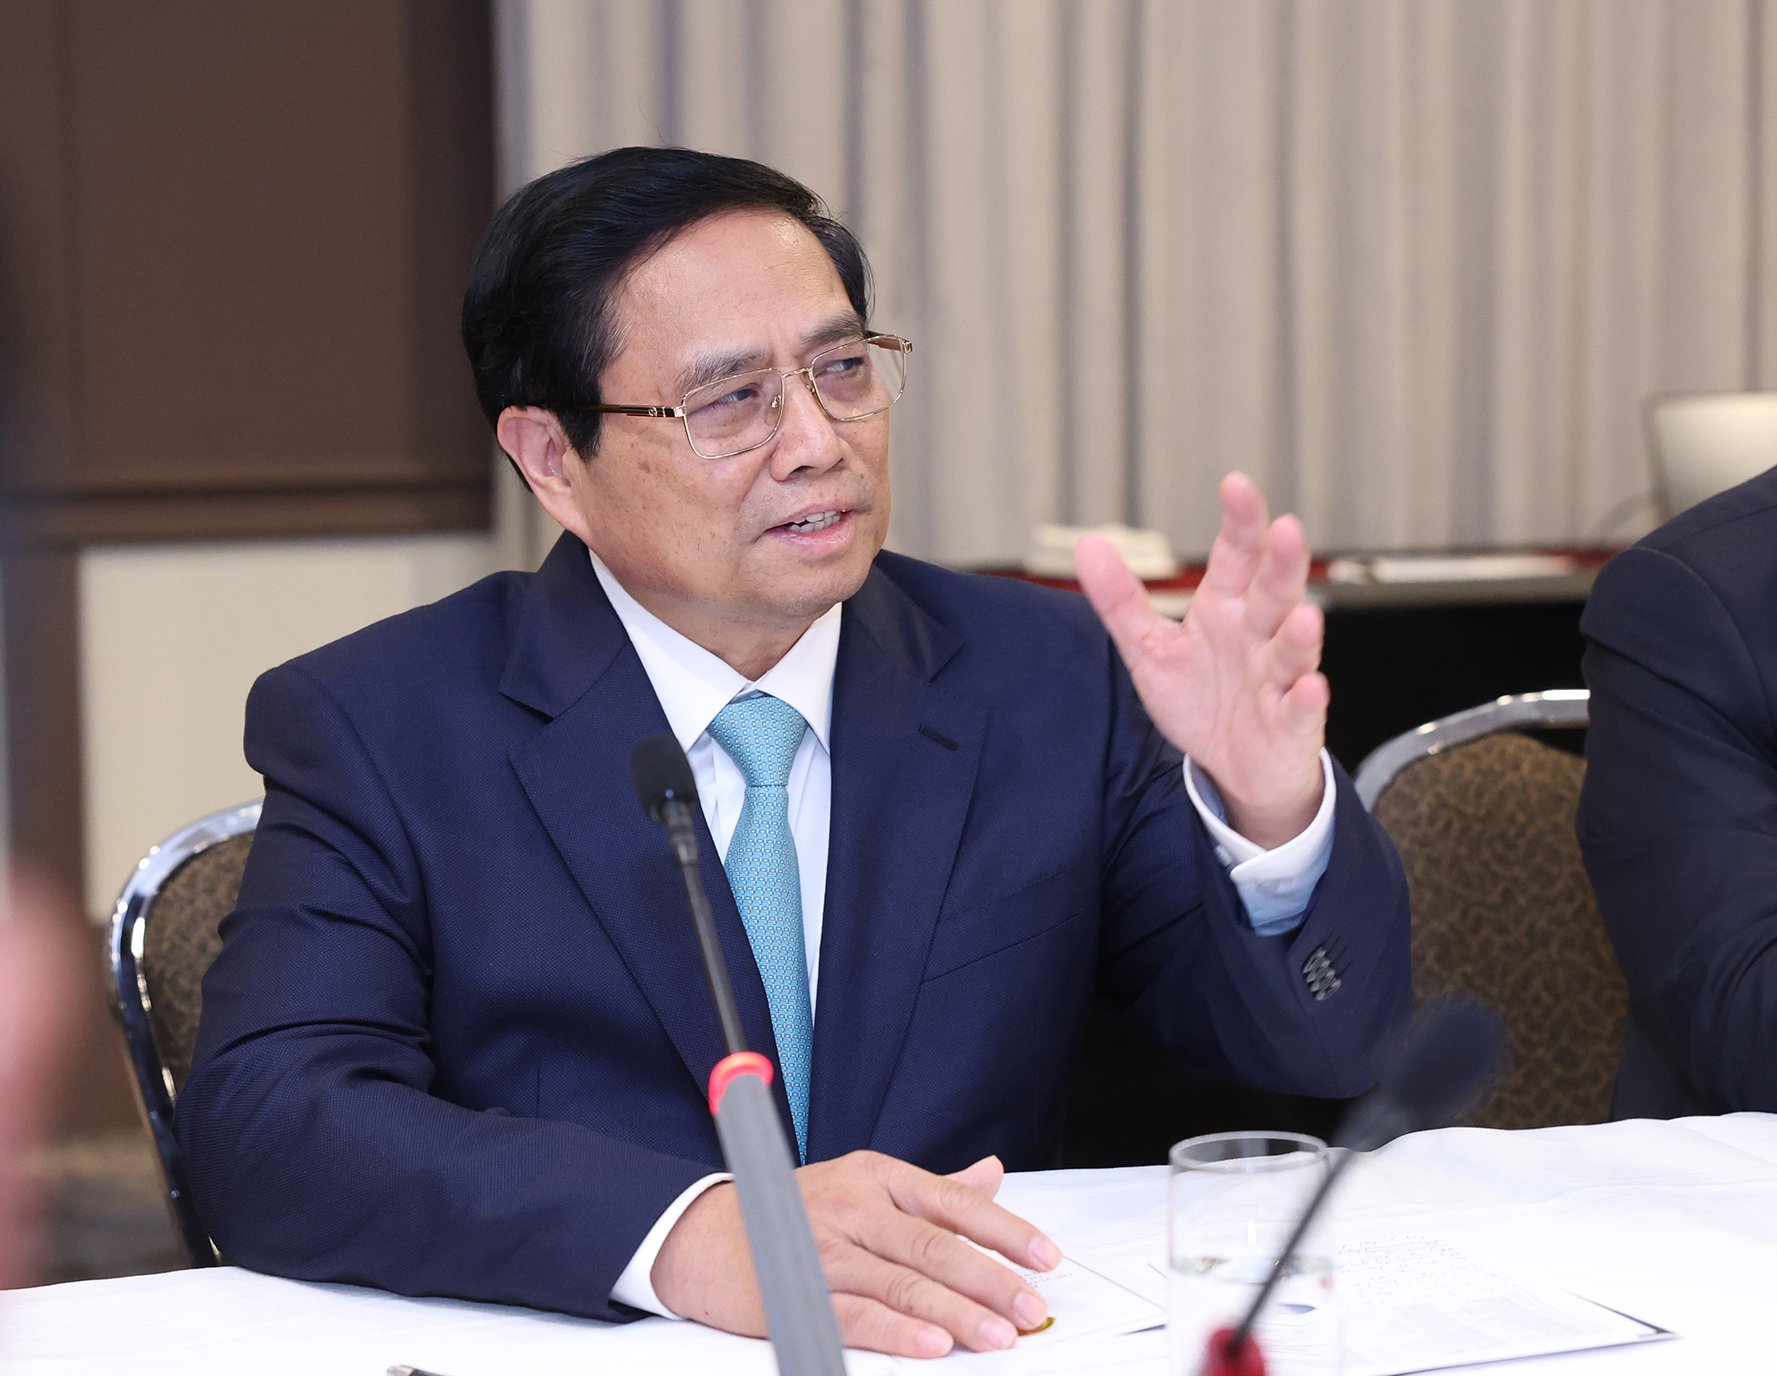 Thủ tướng mong muốn các trí thức và chuyên gia người Việt tiếp tục đóng góp trực tiếp, thiết thực cho công cuộc xây dựng và phát triển đất nước bằng những chương trình, dự án cụ thể - Ảnh: VGP/Nhật Bắc